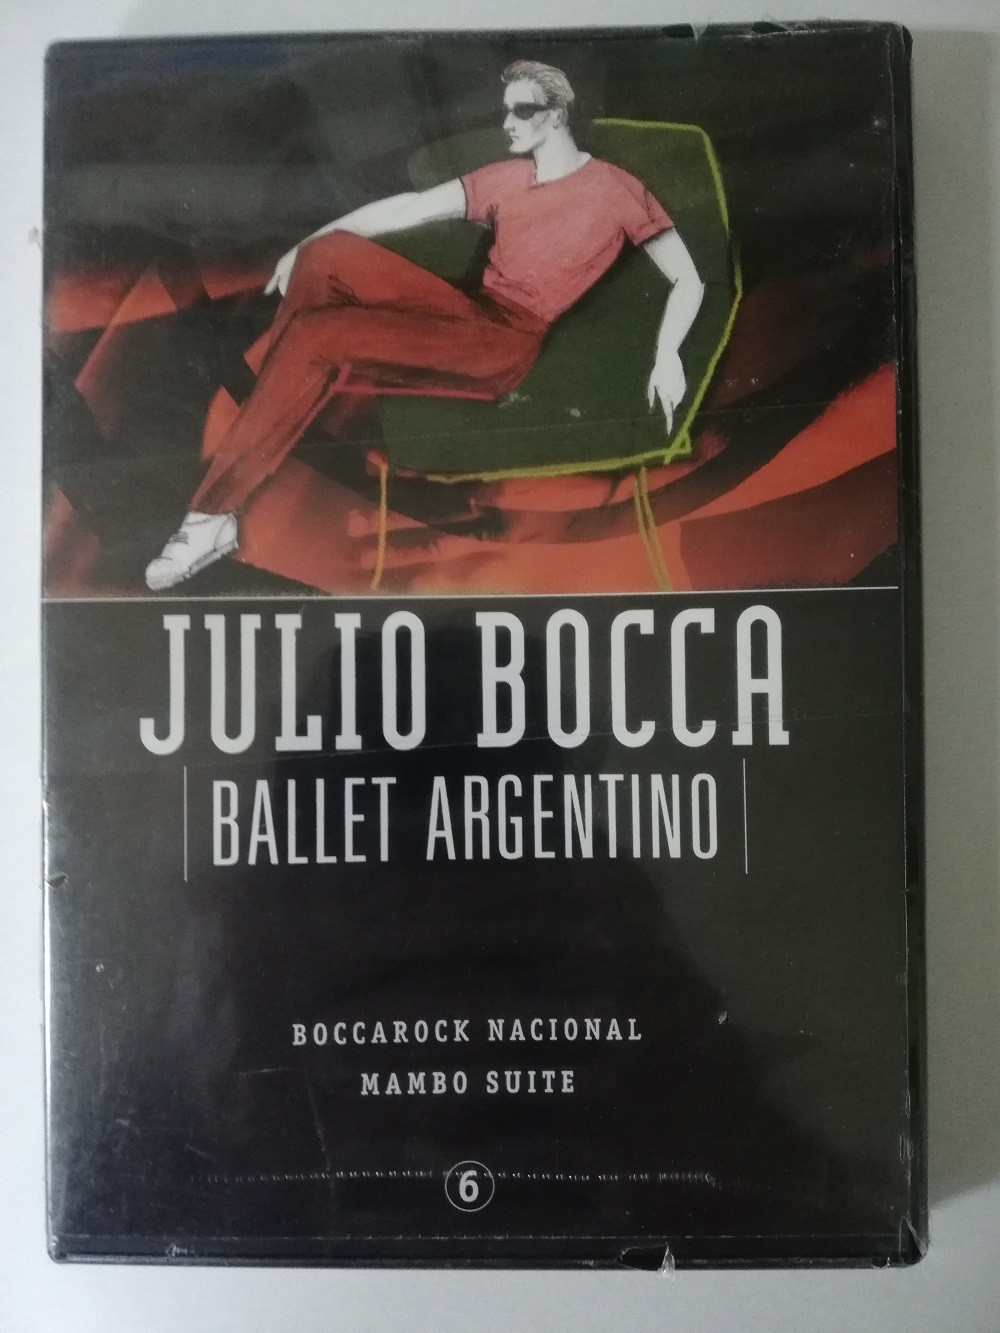 Imagen DVD JULIO BOCCA - BALLET ARGENTINO 1